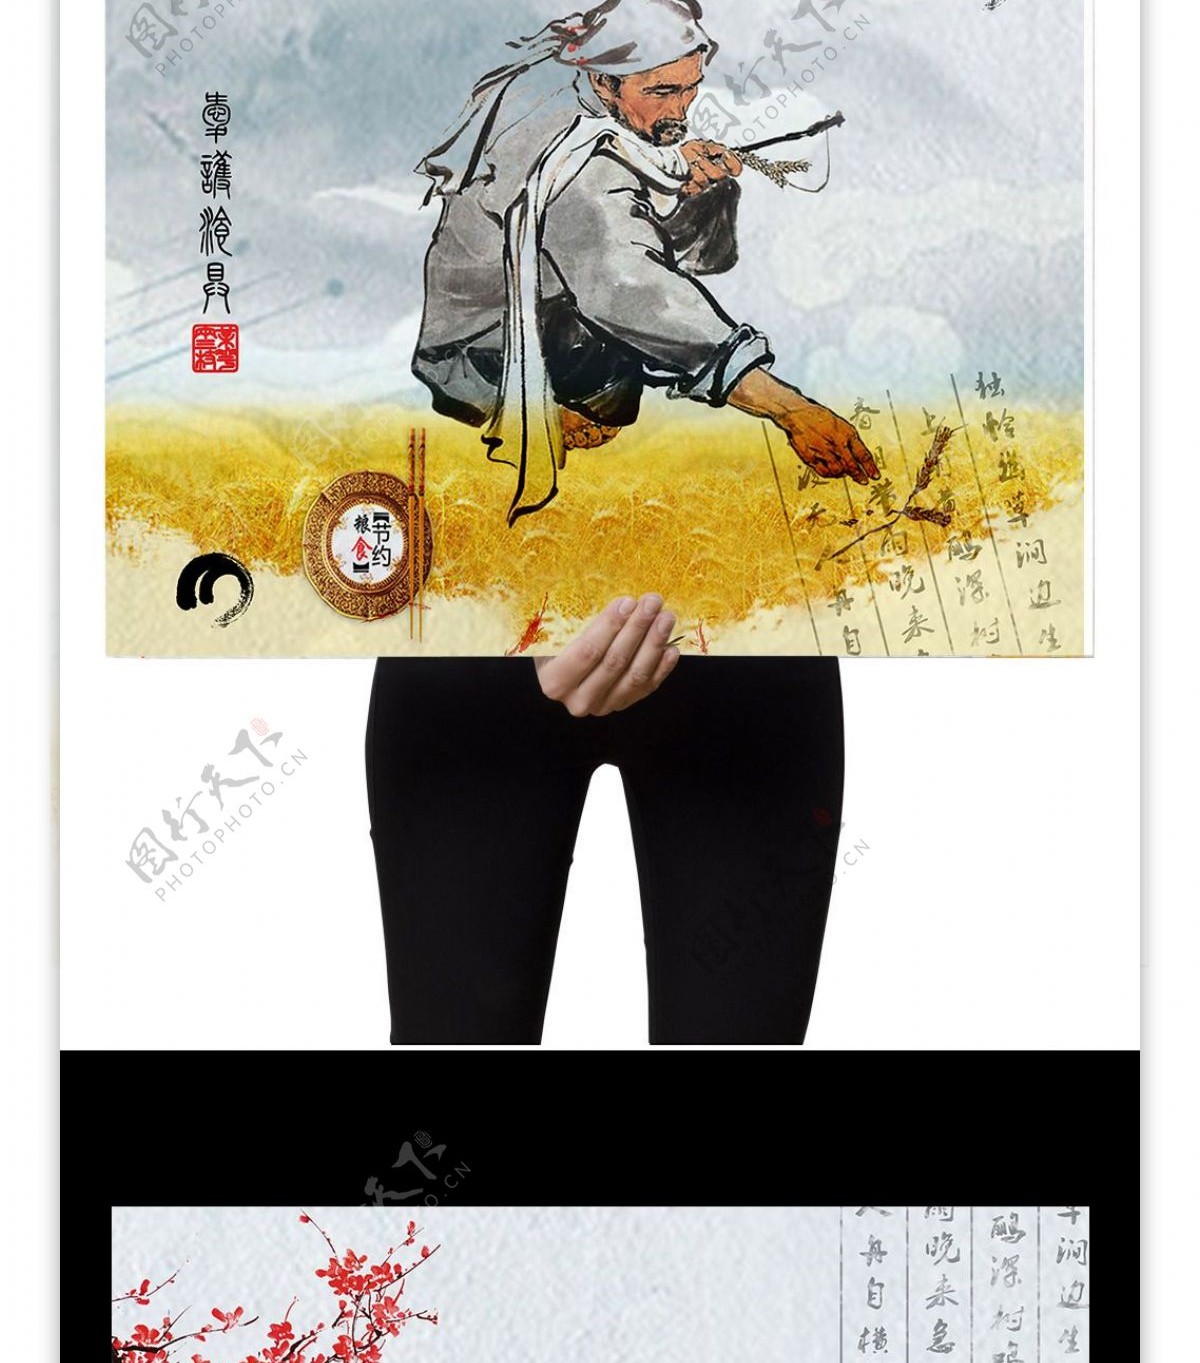 中国风勤俭节约海报设计